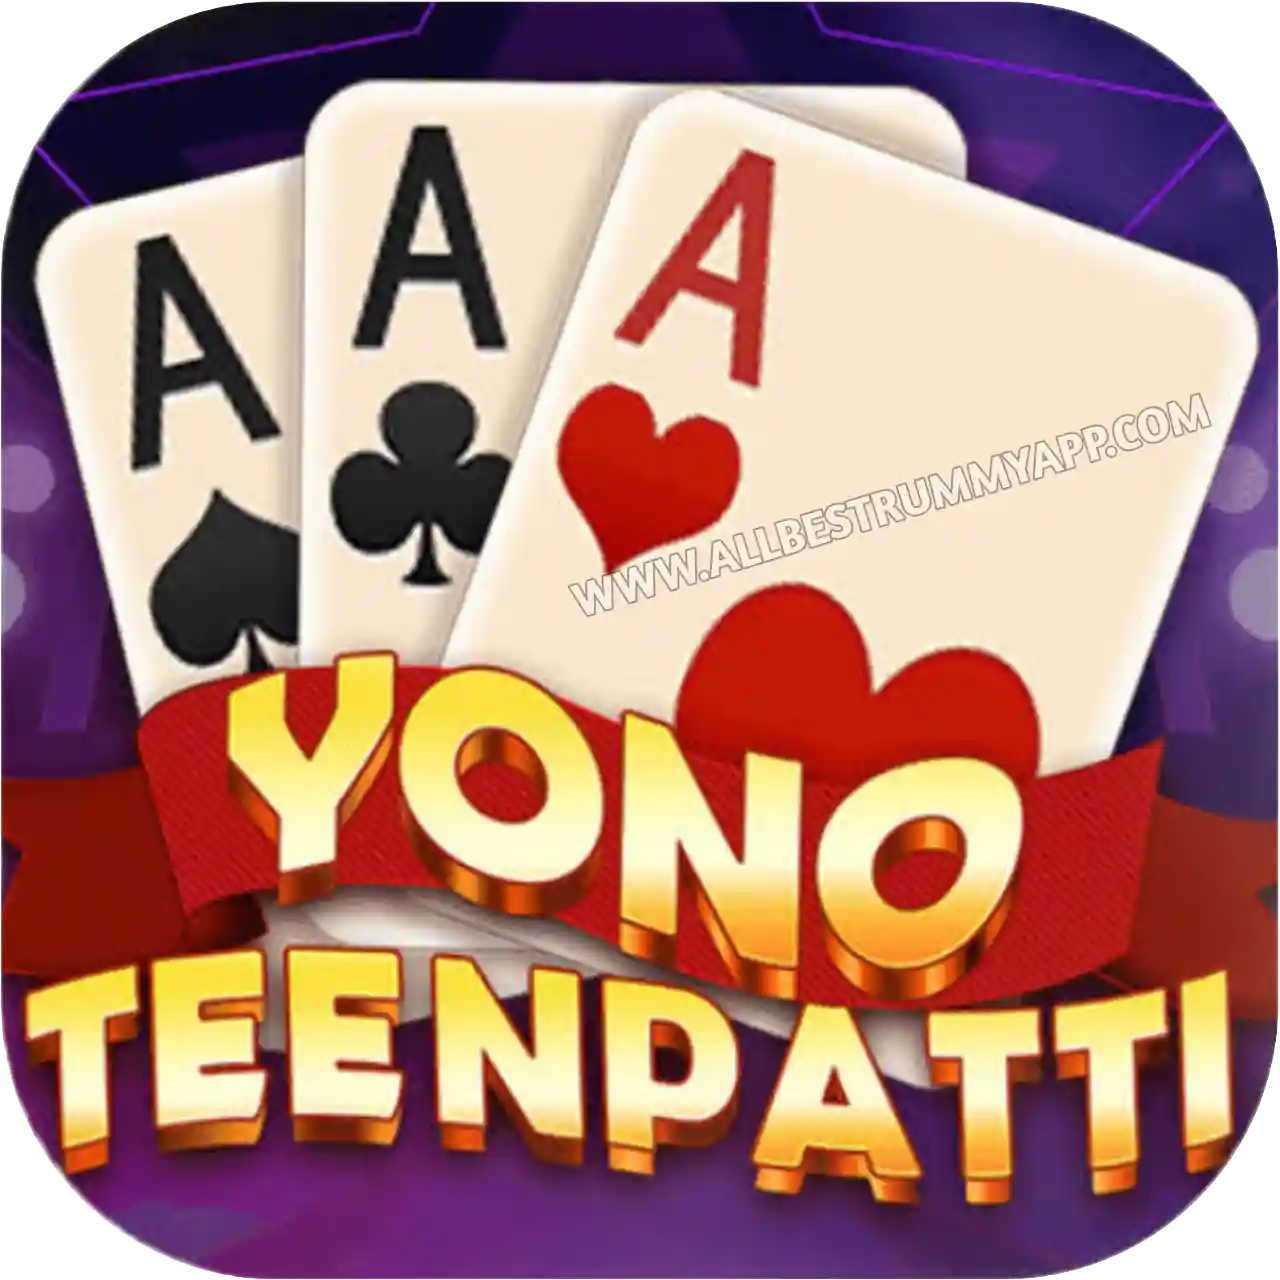 Yono Teen Patti App Logo - All Best Rummy App